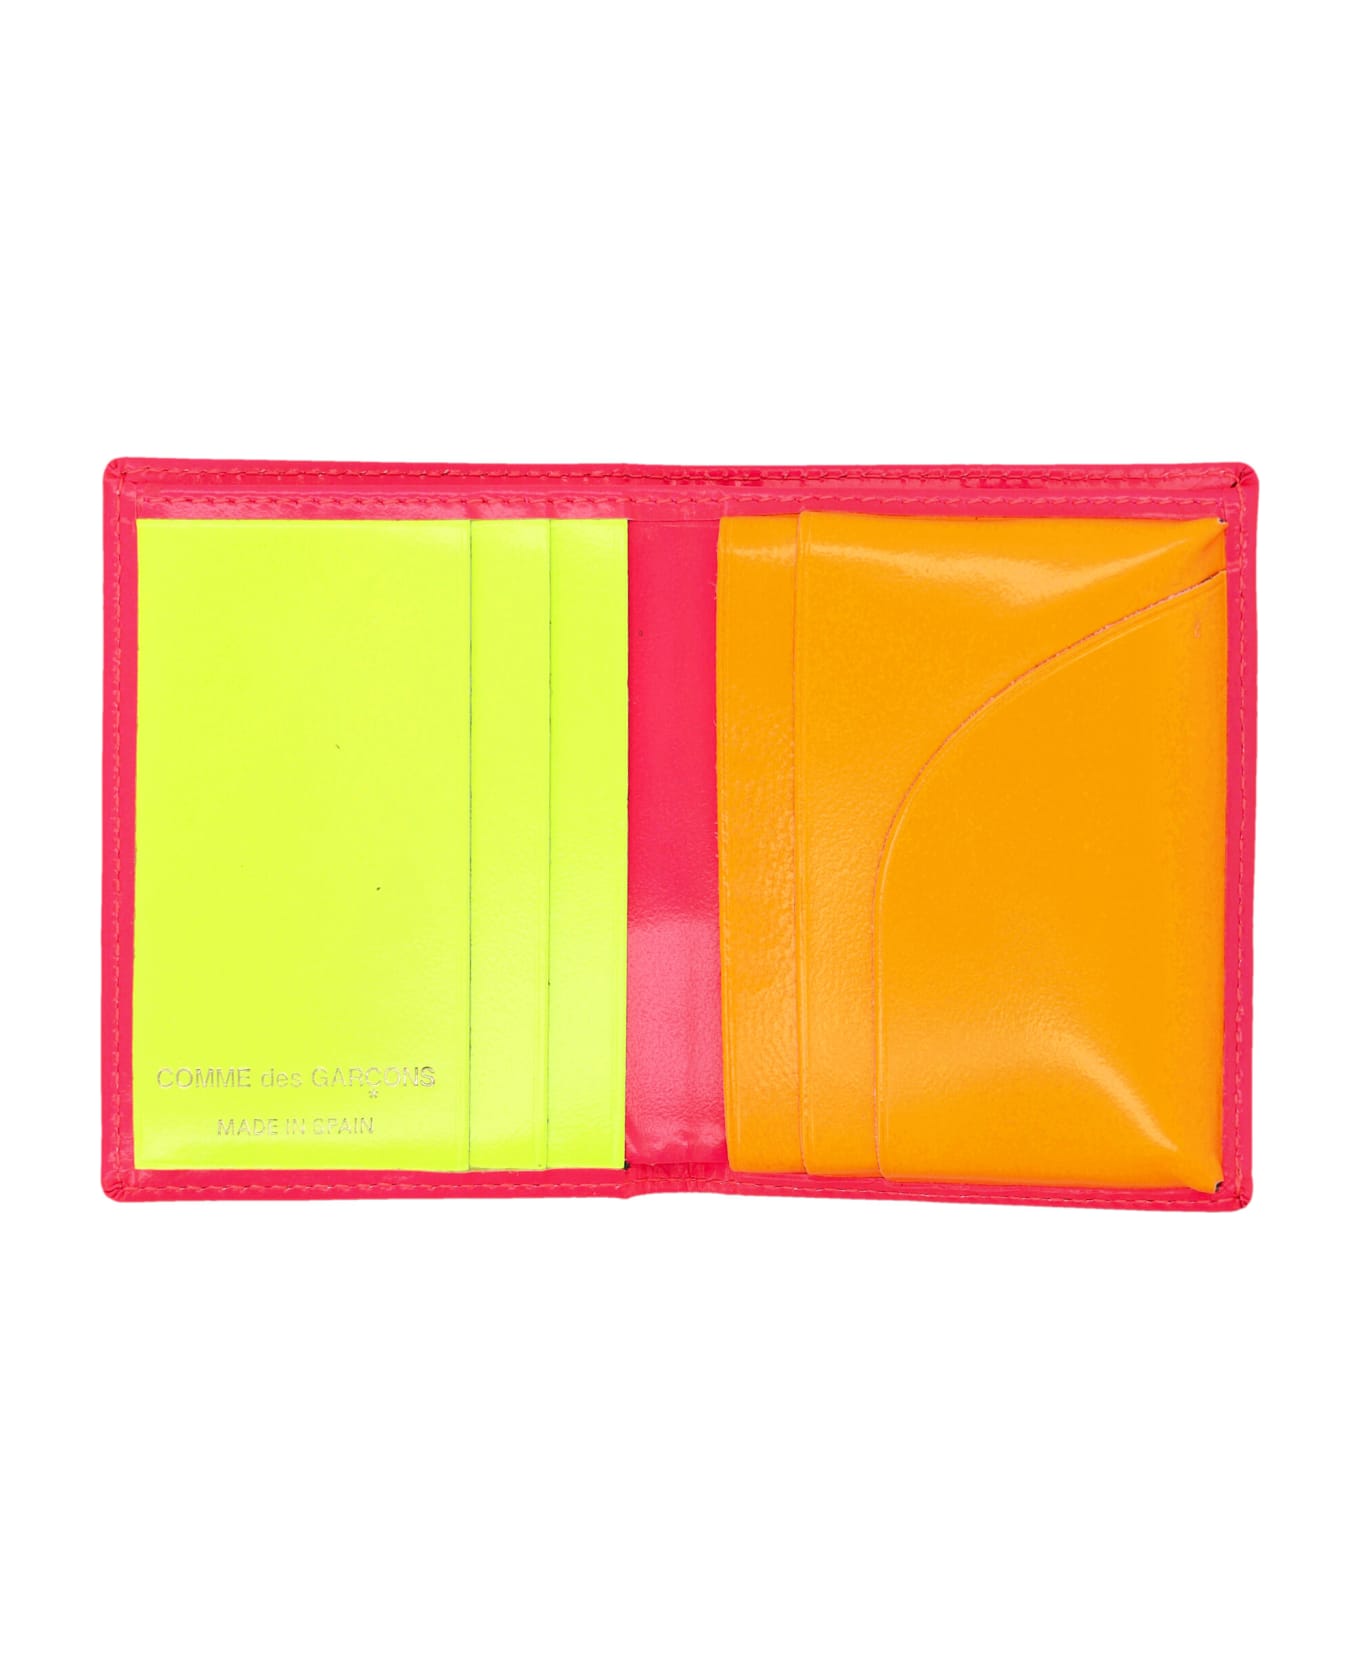 Comme des Garçons Wallet Super Fluo Cardholder - PINK/YELLOW 財布